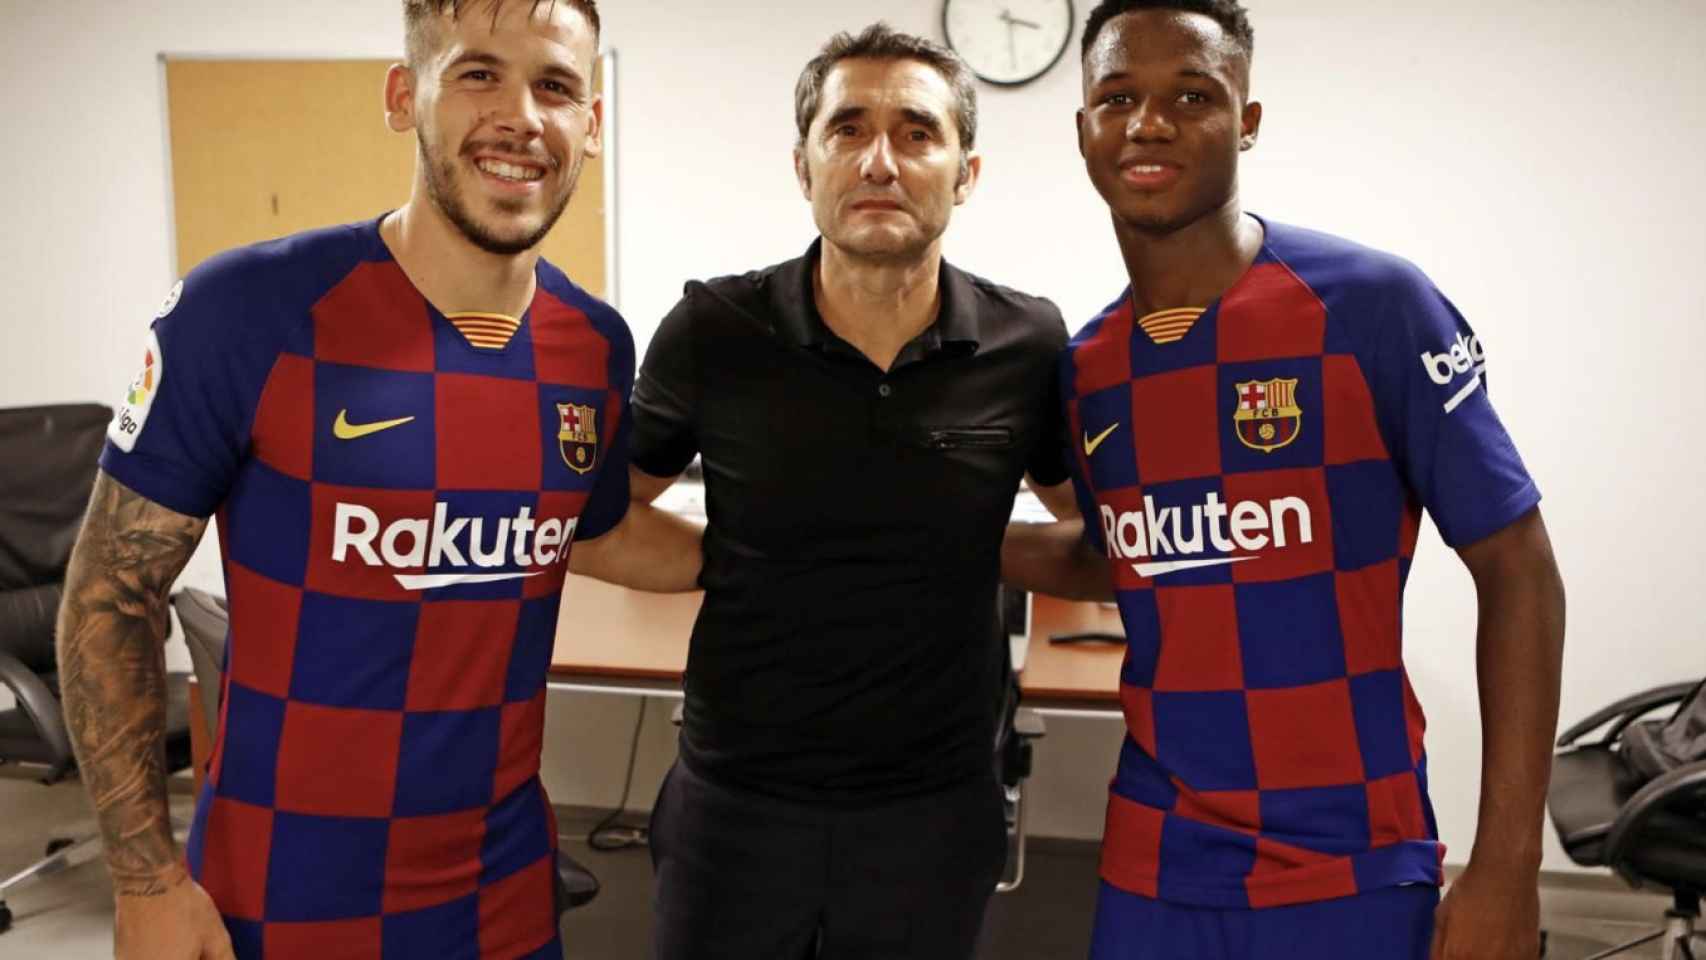 Una foto de Ernesto Valverde junto a Carles Pérez y Ansu Fati / FCB